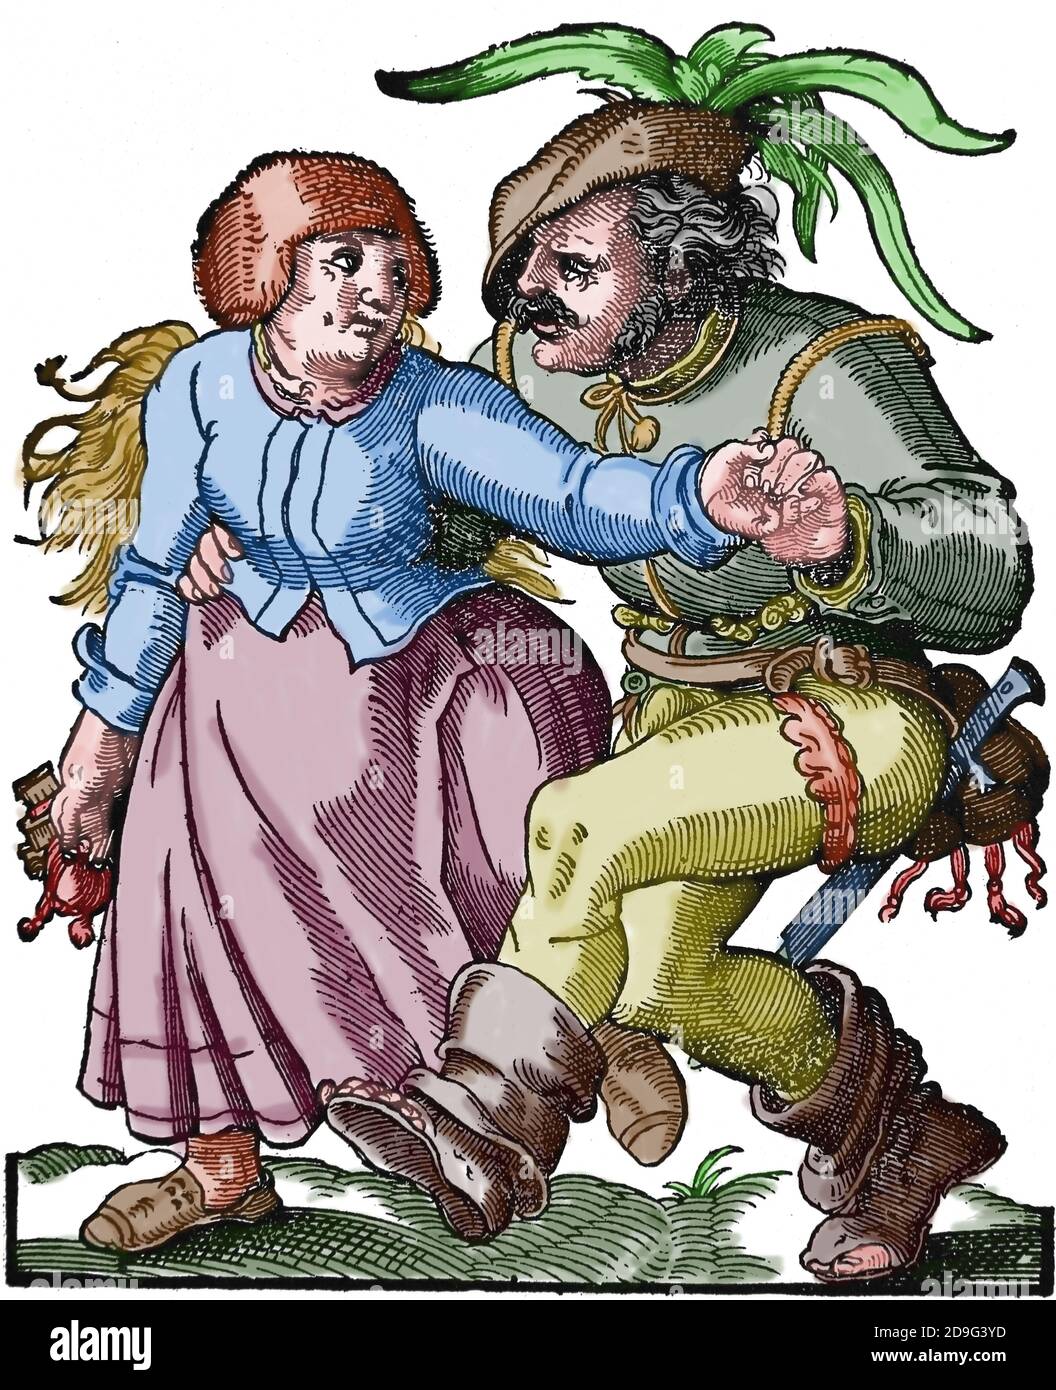 Moderne Zeit. Renaissance. 16. Jahrhundert. Bauernpaar tanzt. Stich von Jost Amman, 1599. Stockfoto